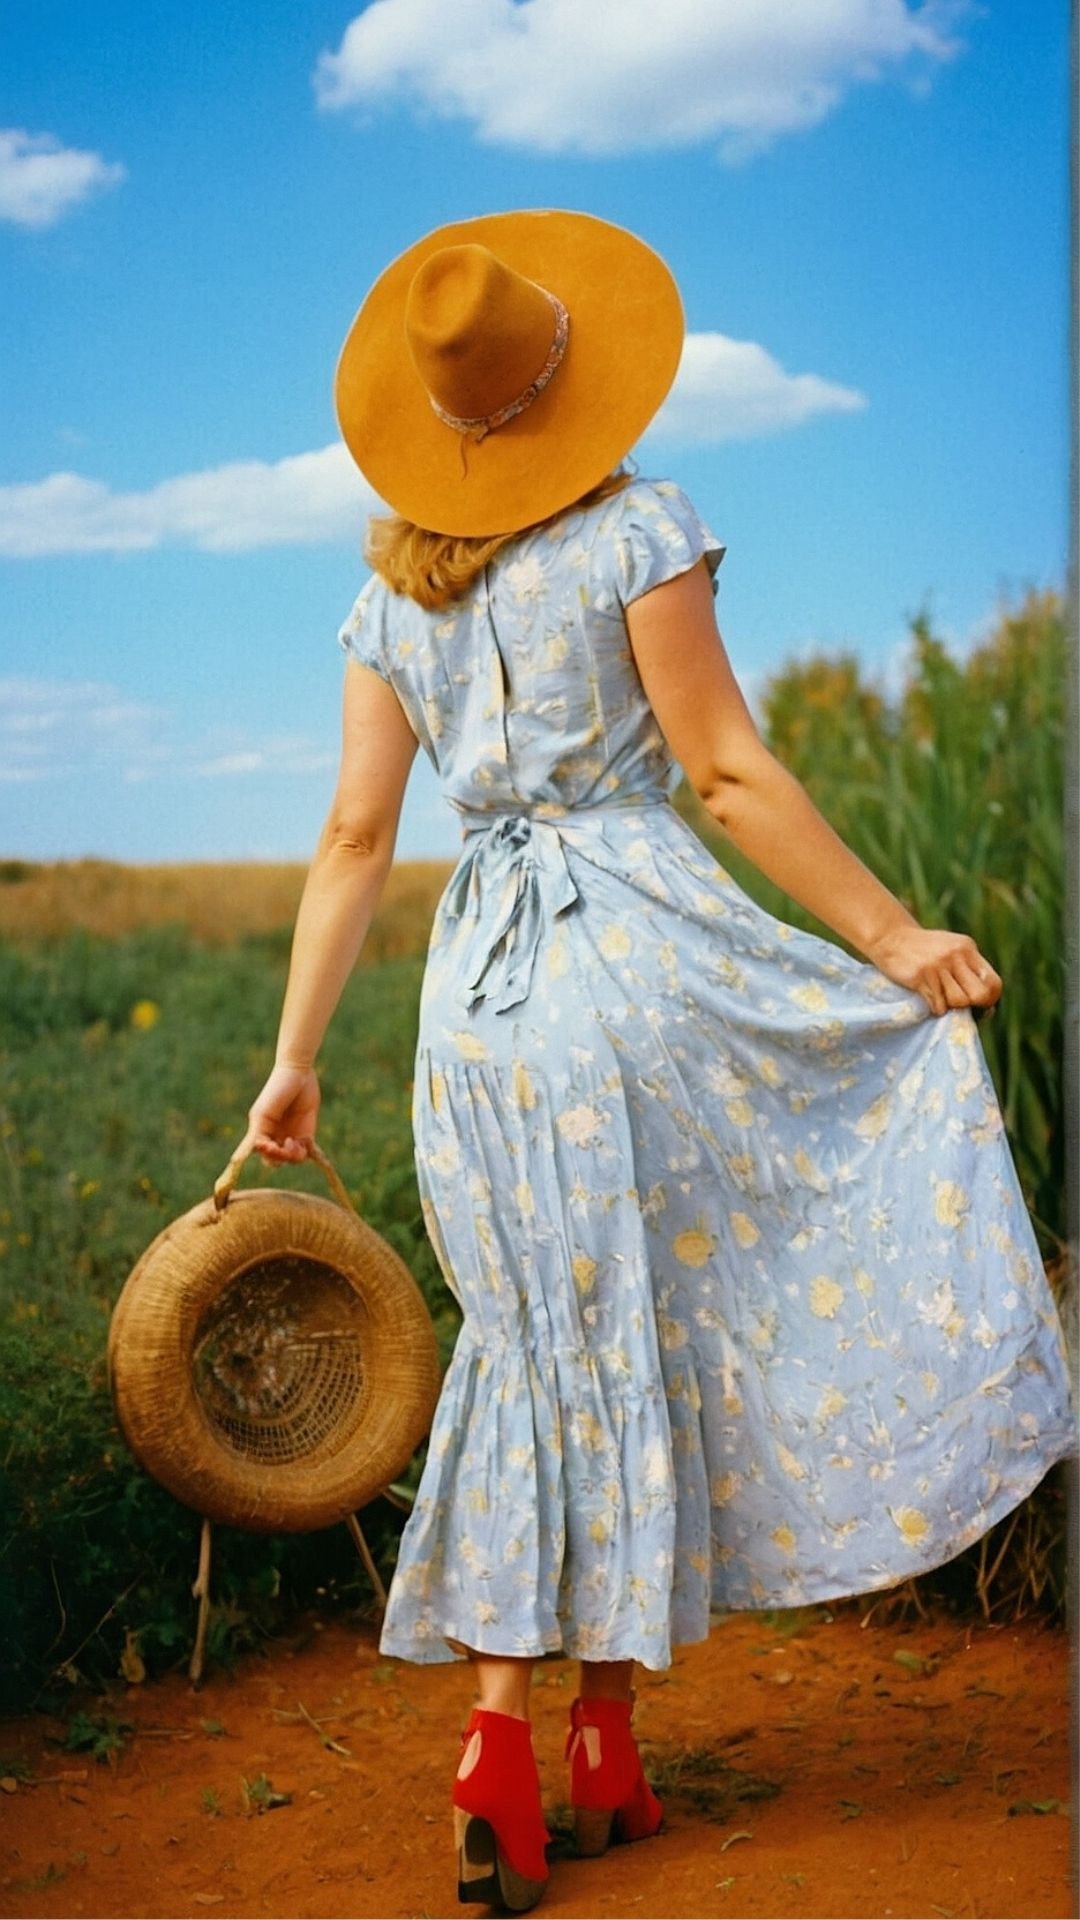 Rustic Backroad Beauty: Sun Hat and Flower Field Wallpaper